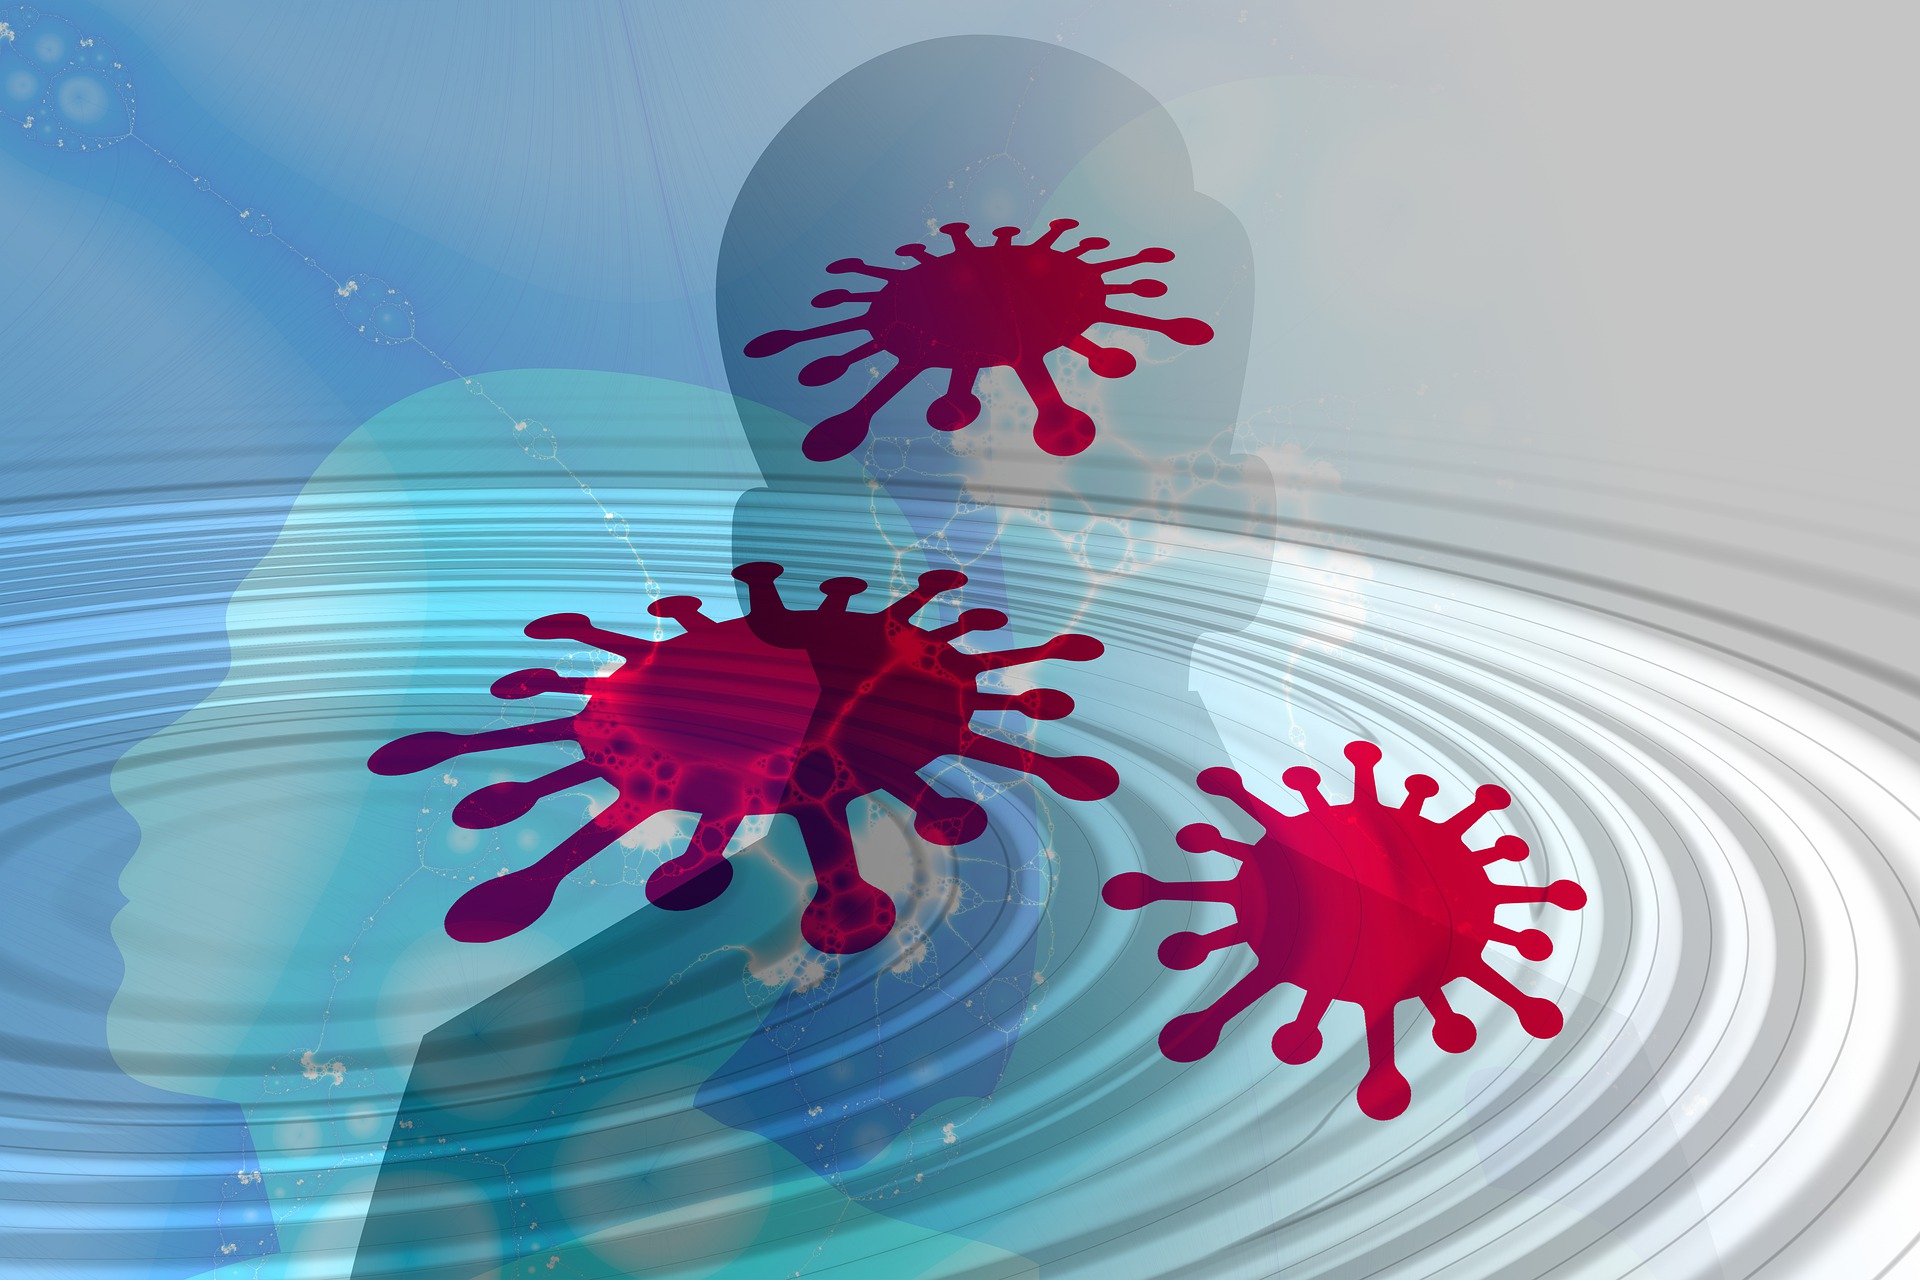 Según un estudio de la Universidad de Florida (UF), el virus del covid-19 no solo flota en el aire, sino que está allí "vivo", y además puede contagiar a una distancia mayor de 1.8 metros. (Foto Prensa Libre: Pixabay)